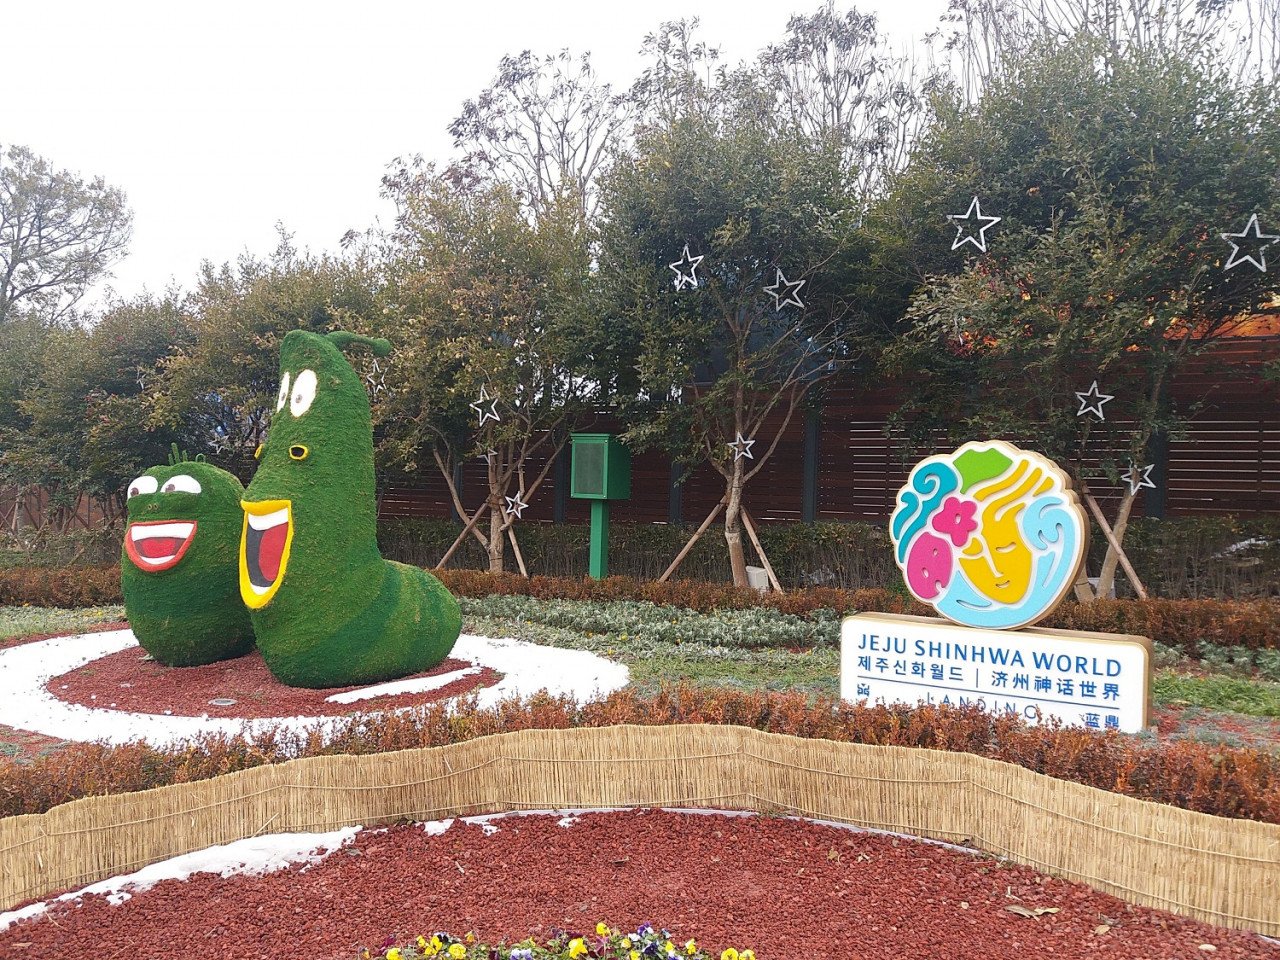 Dengan harga KRW 39,000 won (RM130.57)  untuk dewasa dan kanak-kanak, taman tema  ini menawarkan tiga zon bertema yang terdiri daripada Larva's Adventure Village, New World Oscar dan Rotary Park